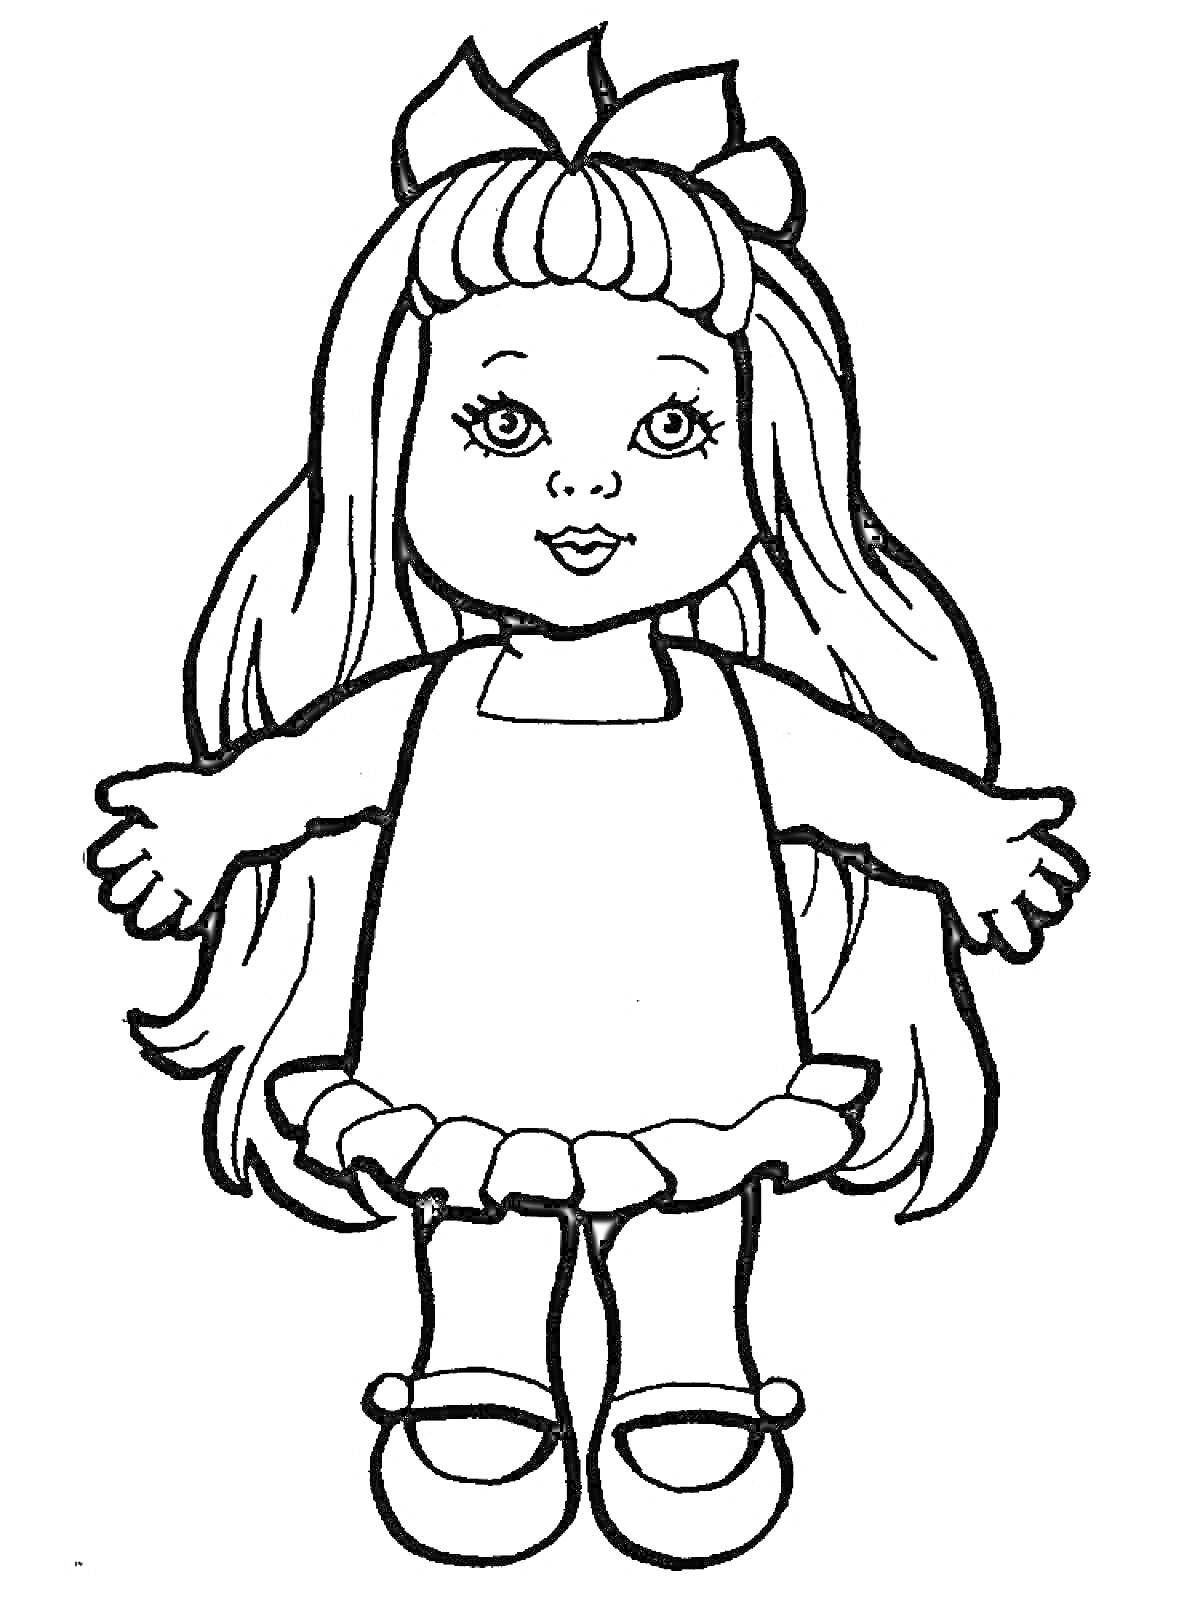 Раскраска Кукла с длинными волосами, в платье с рюшами и бантом на голове